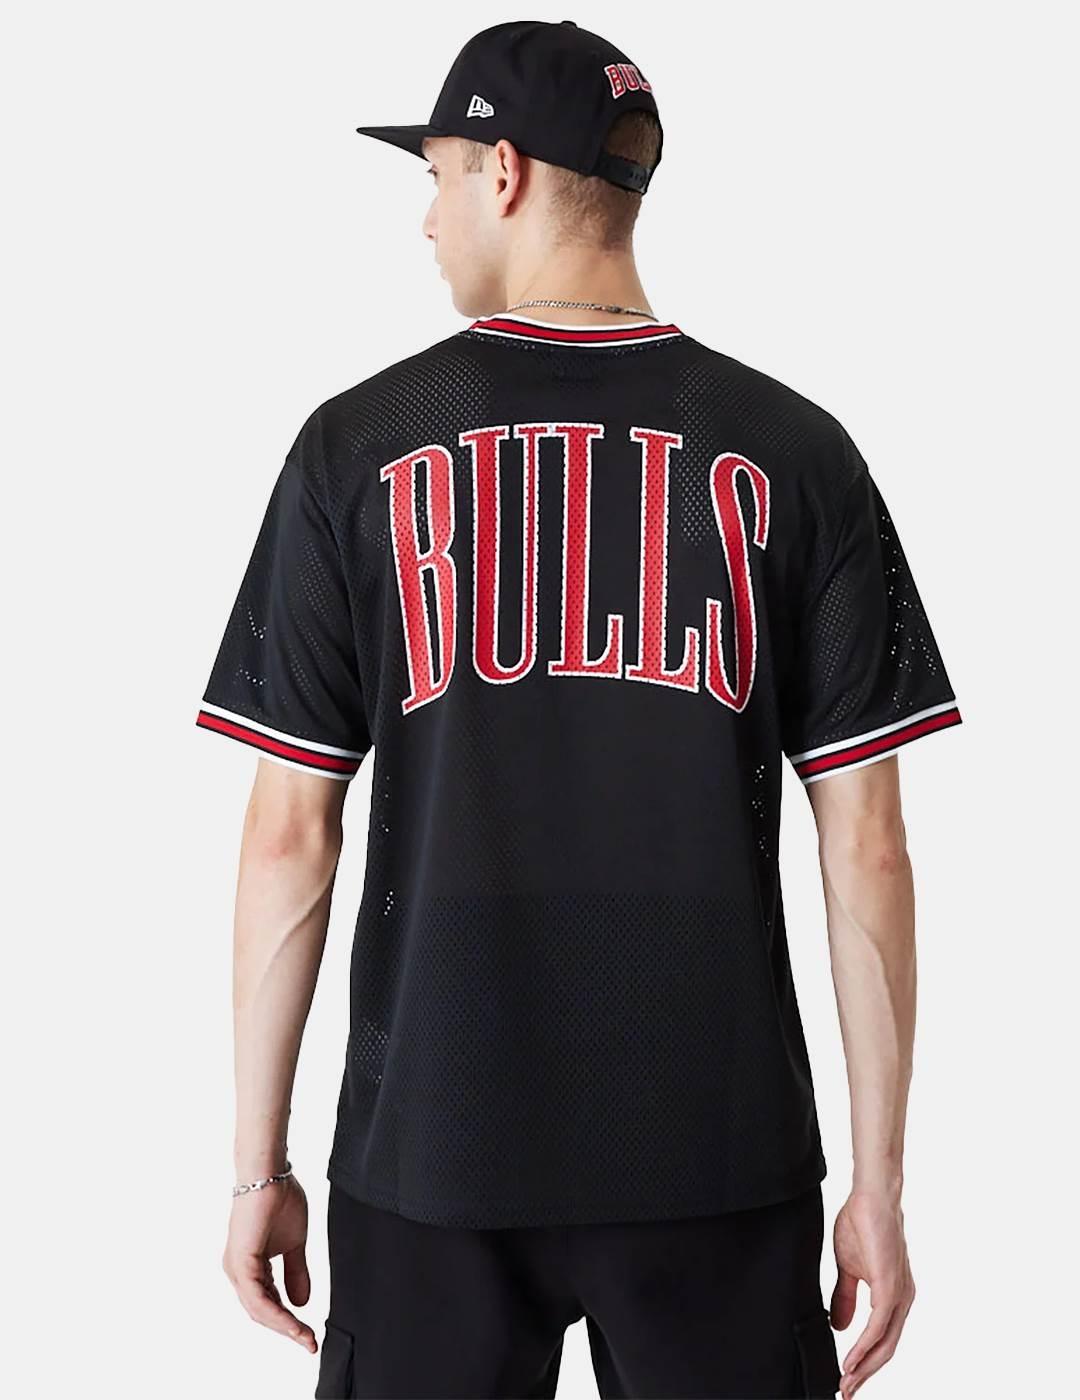 Camiseta New Era NBA Bulls Mesh Negro